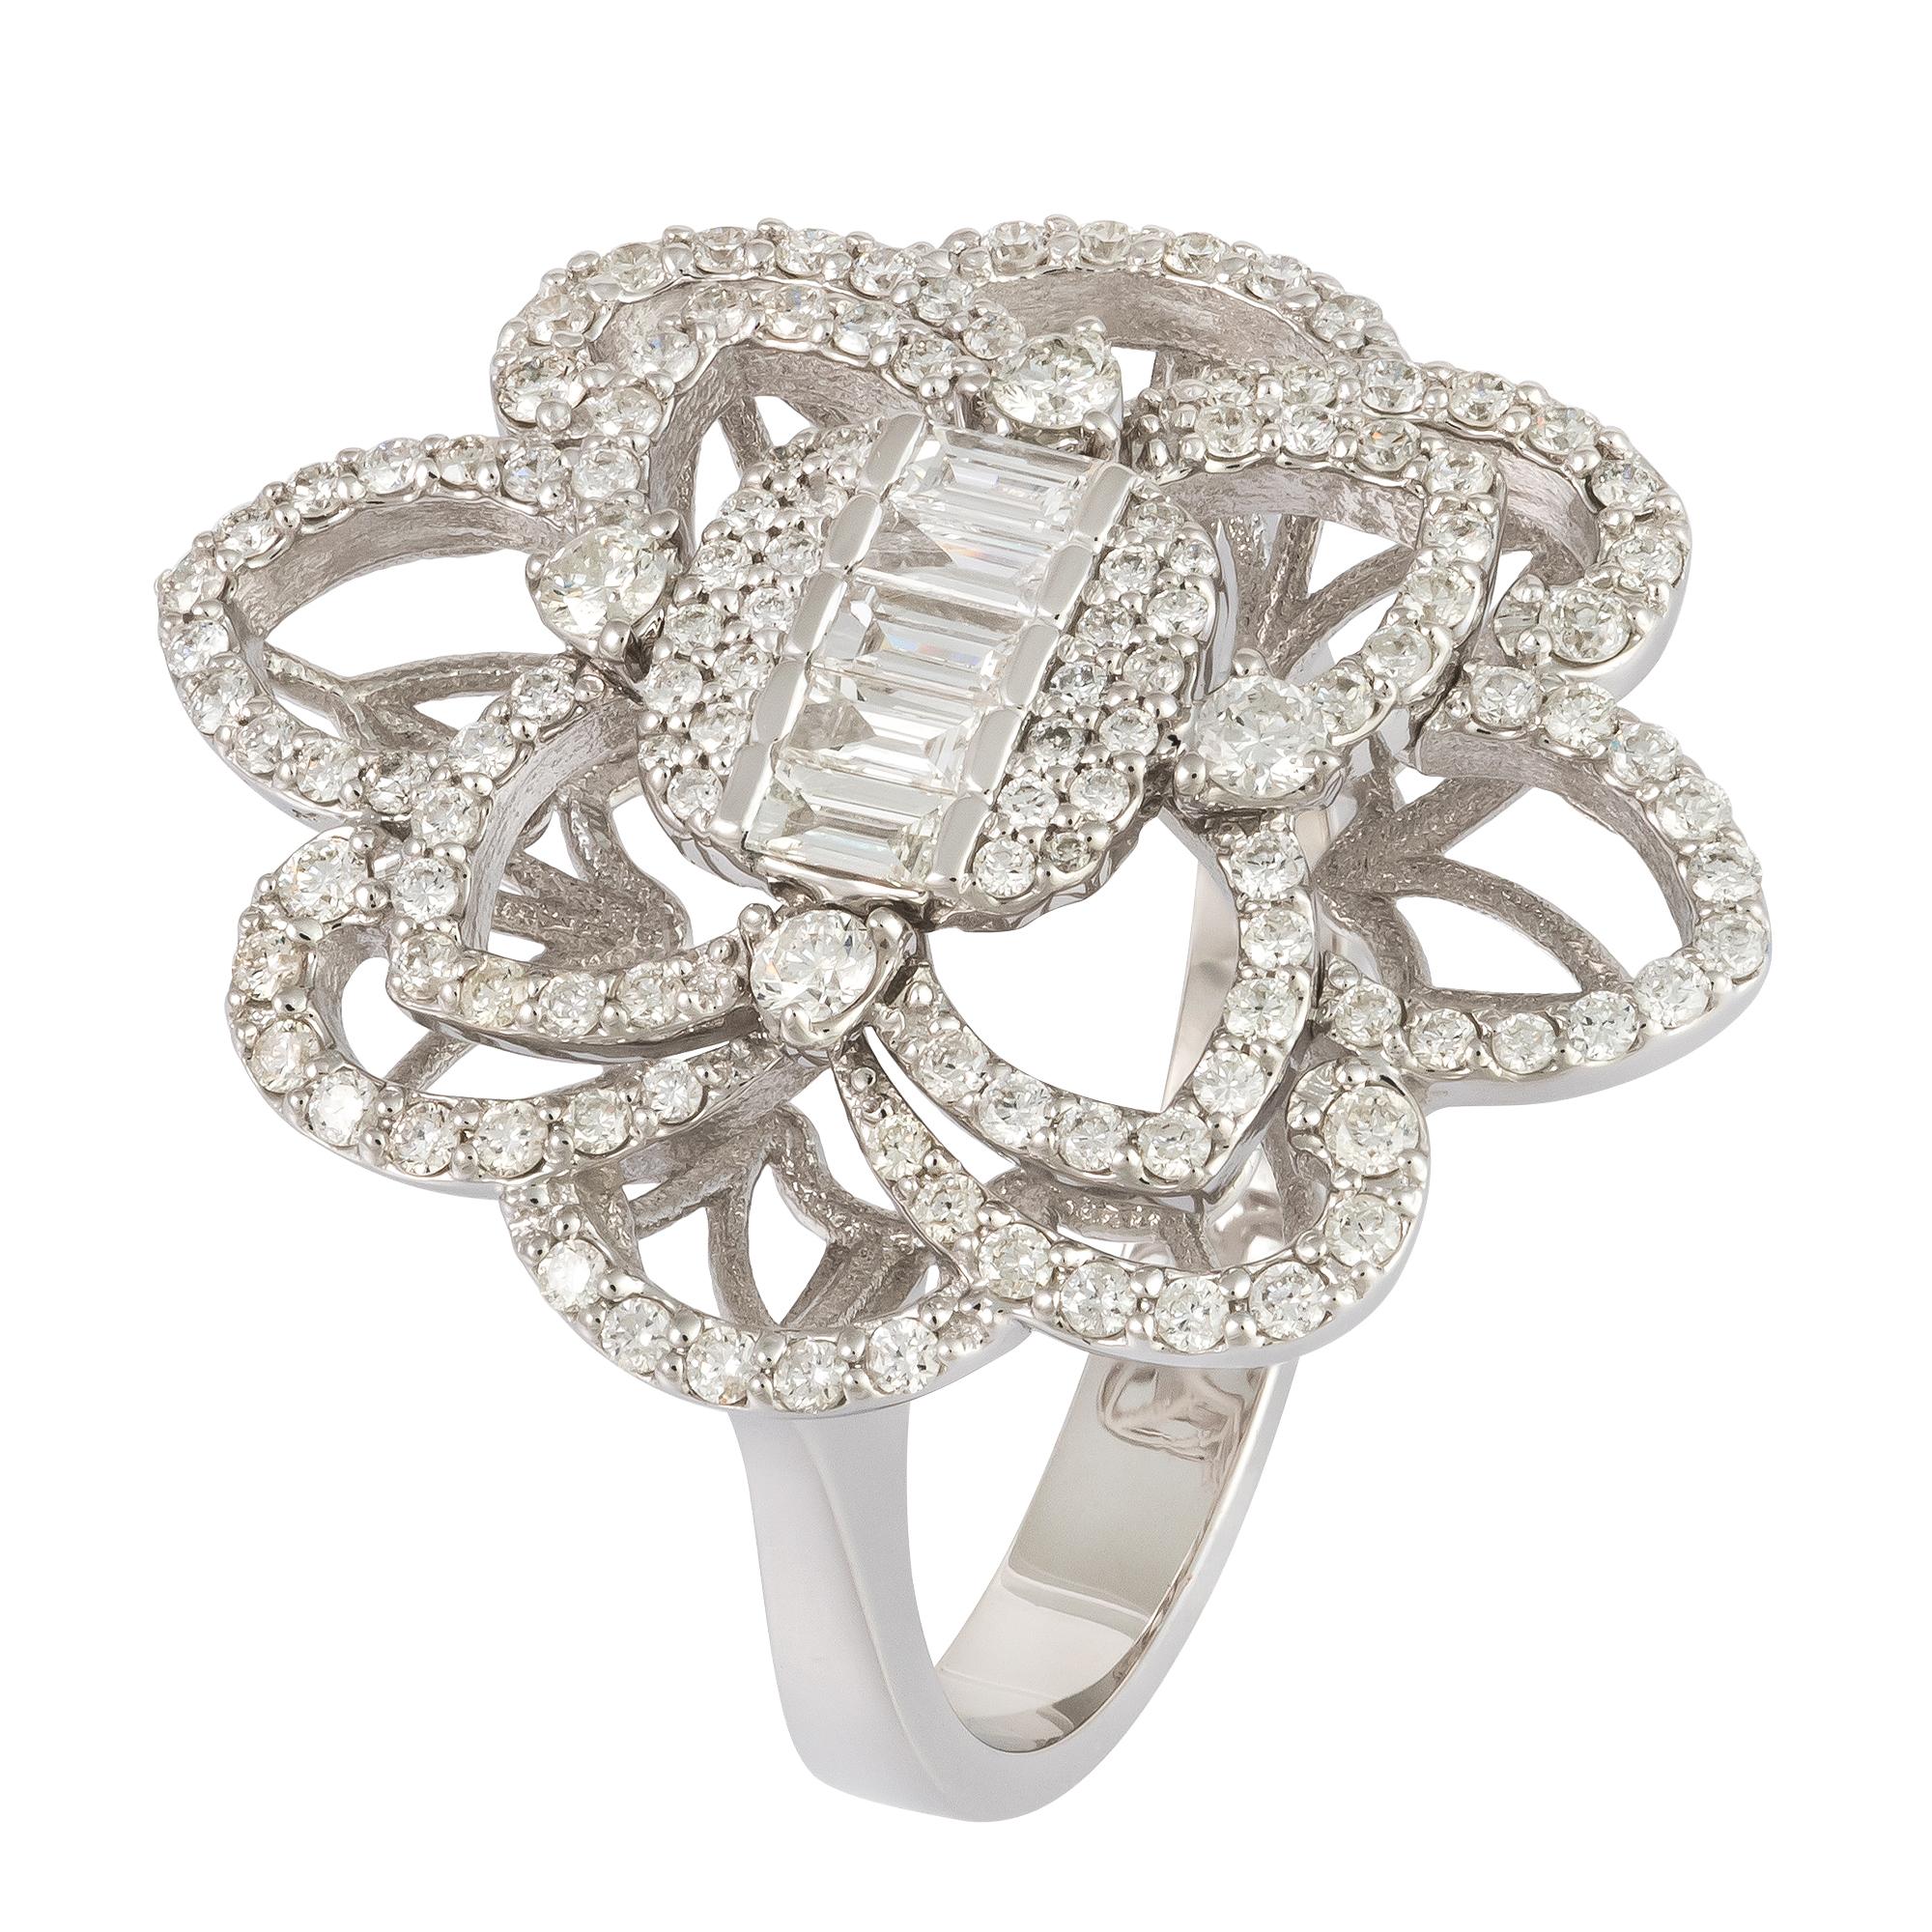 For Sale:  Stunning Flower White 18K Gold White Diamond Ring For Her 4